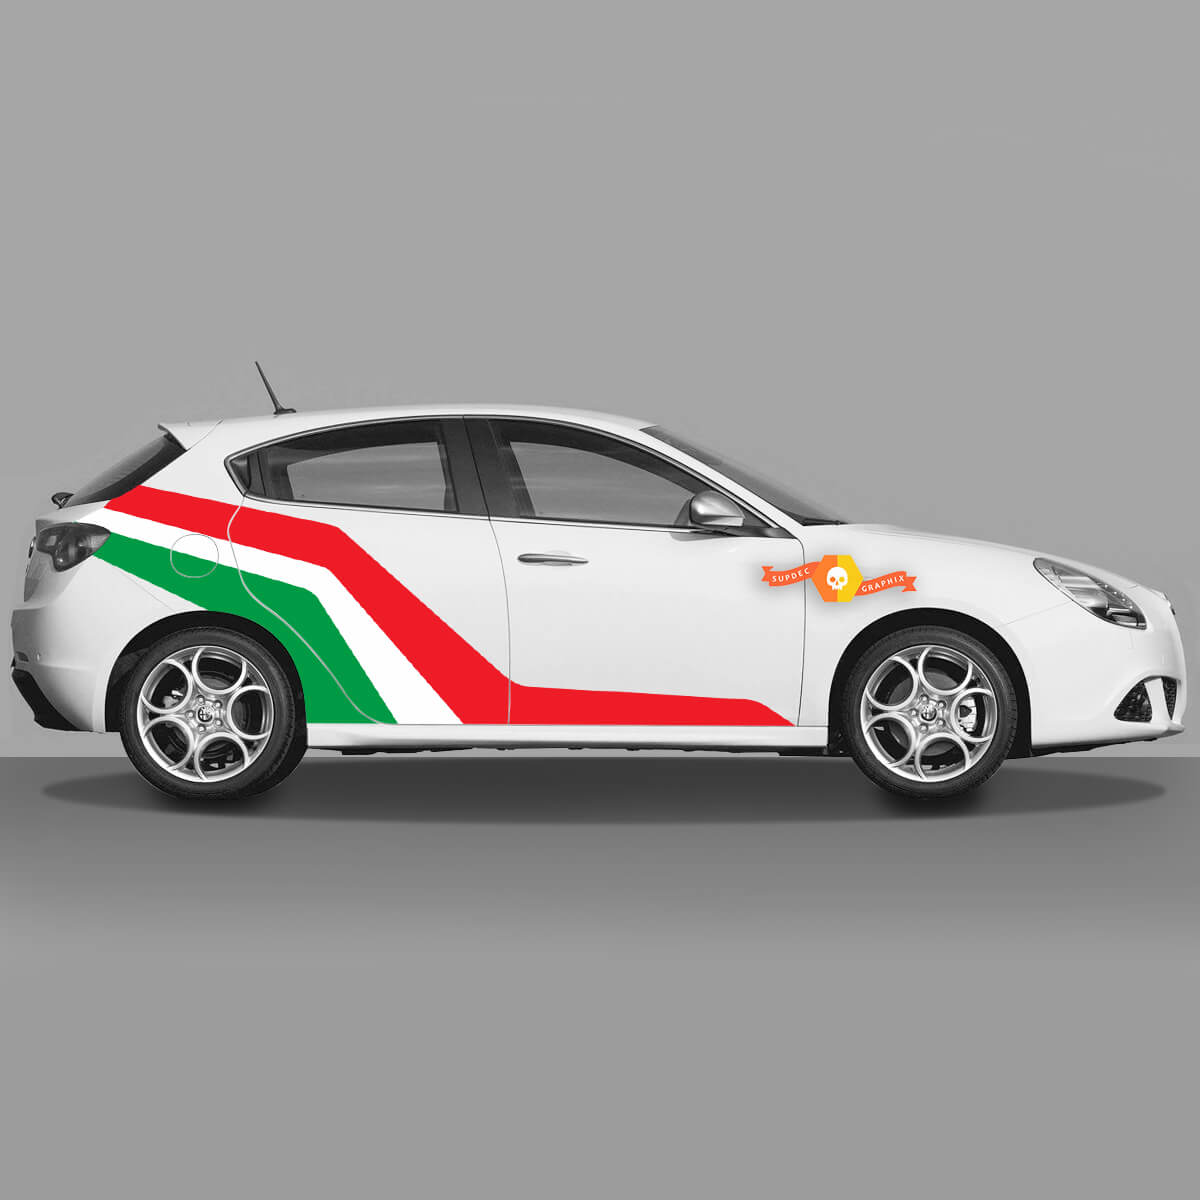 2x Standard-Türaufkleber in den Farben der italienischen Flagge, passend für Alfa Romeo Giulietta-Aufkleber, Vinyl-Grafik, erweitert, verändert
